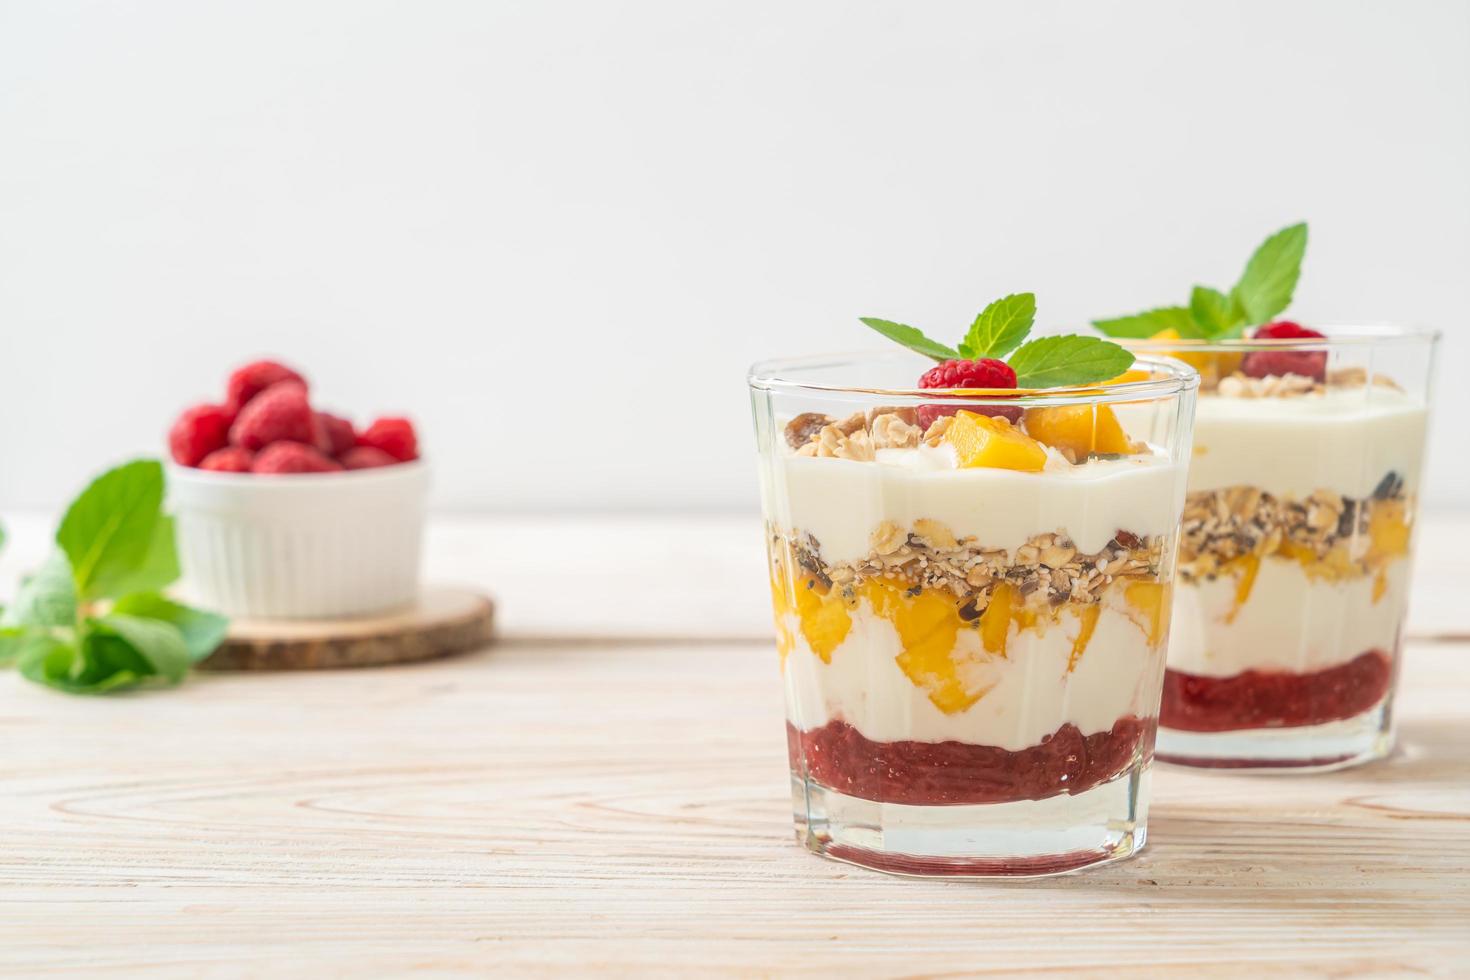 manga fresca caseira e framboesa fresca com iogurte e granola - estilo de comida saudável foto